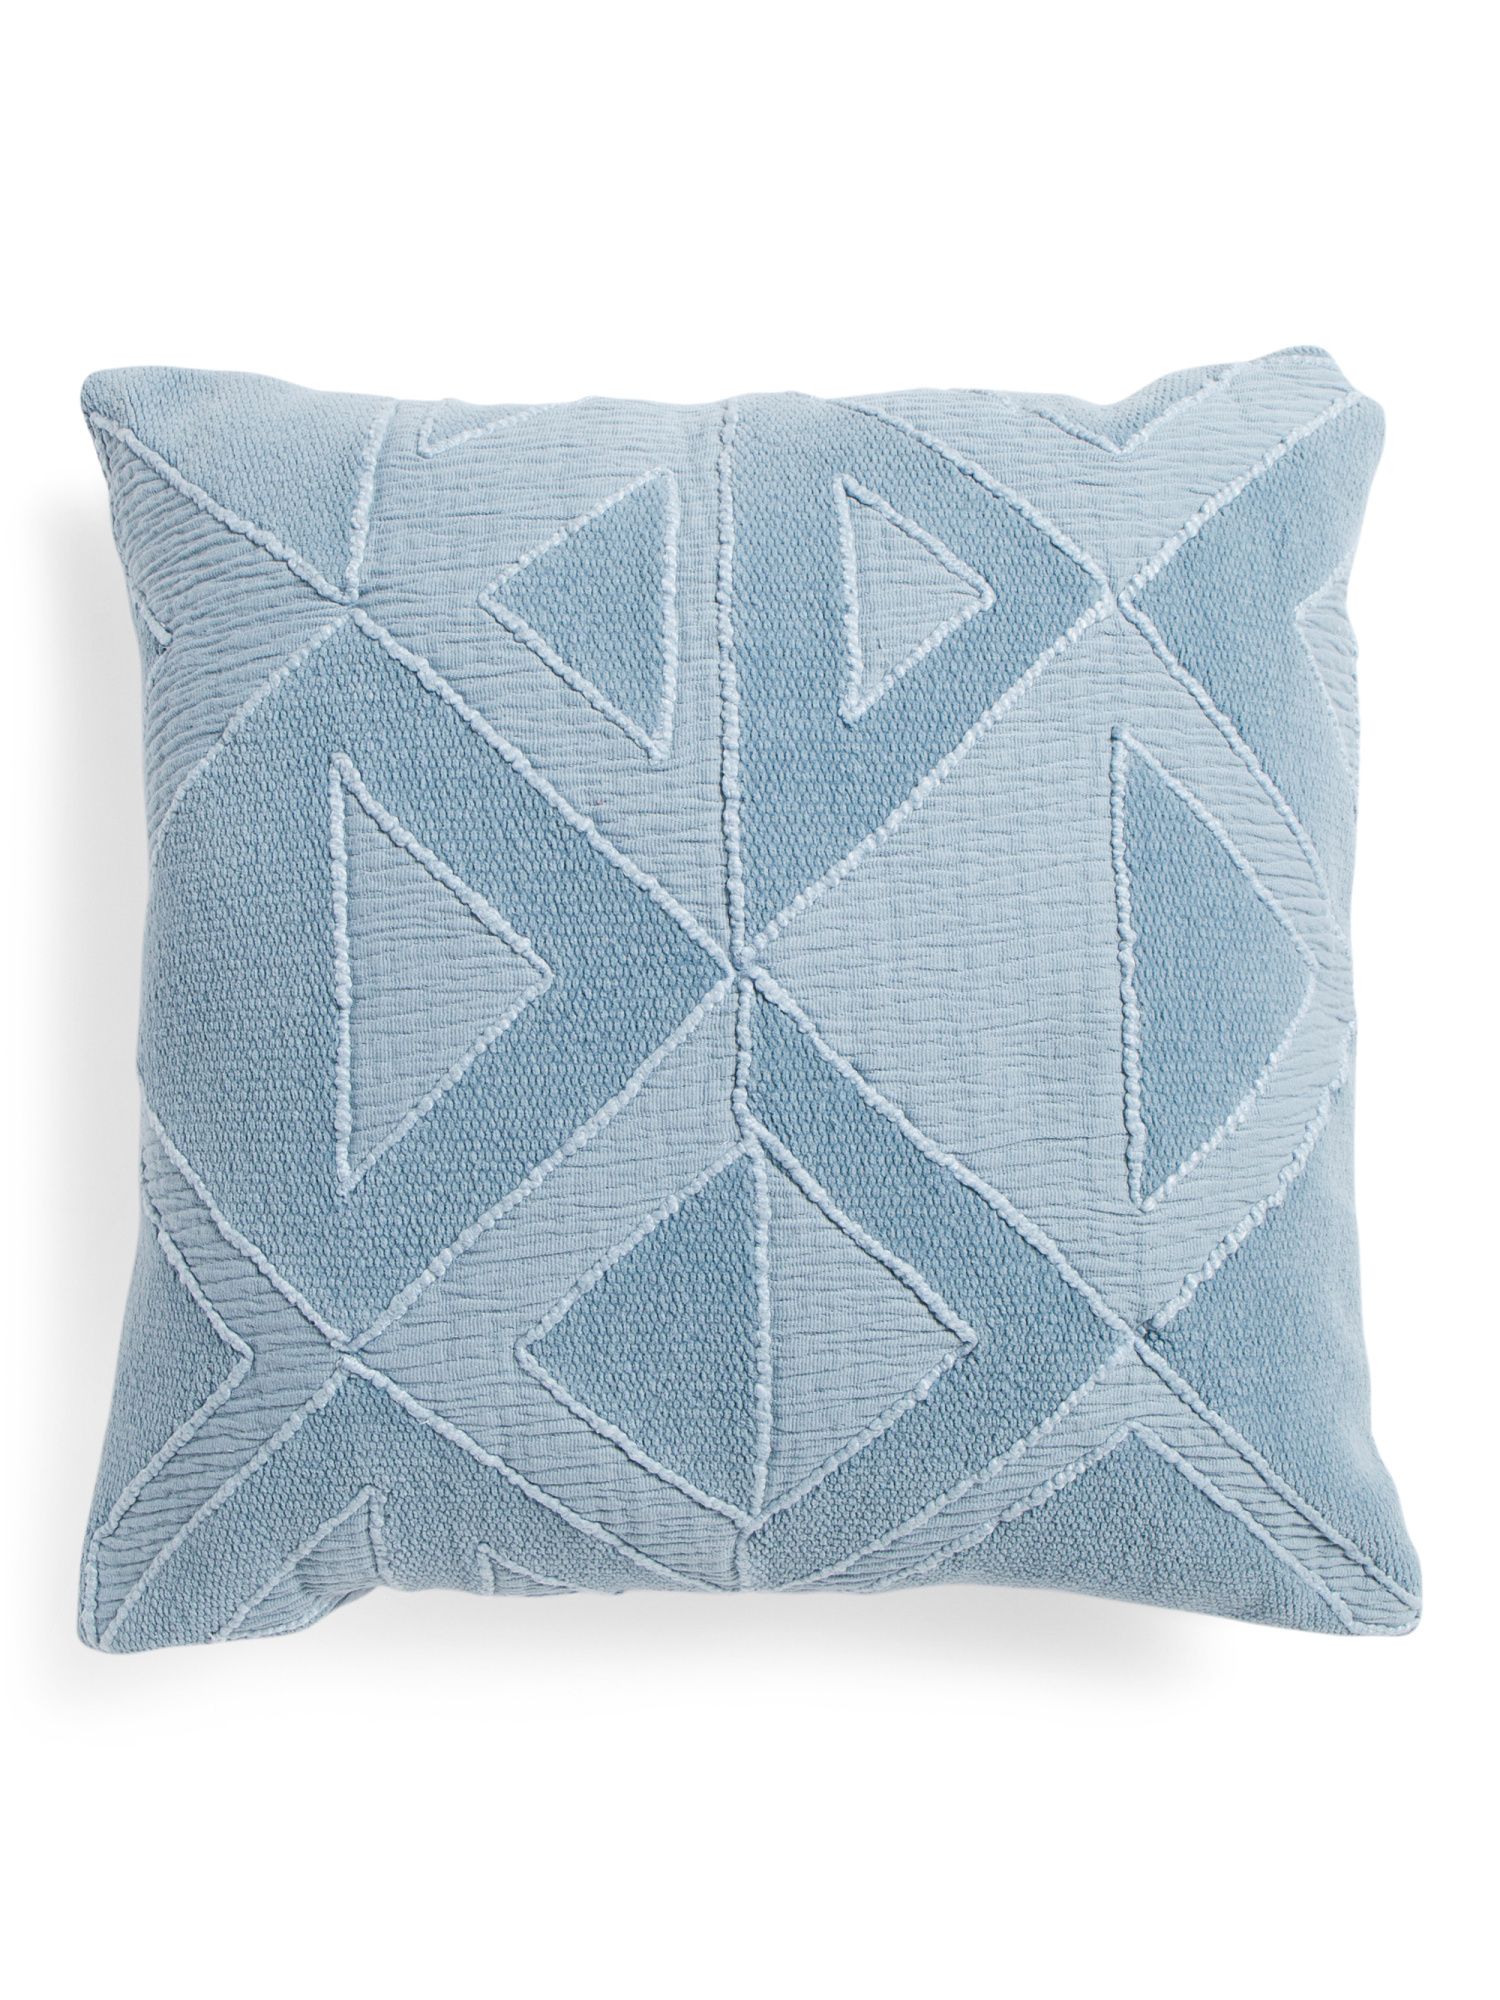 20x20 Denim Embroidered Geometric Pillow | TJ Maxx